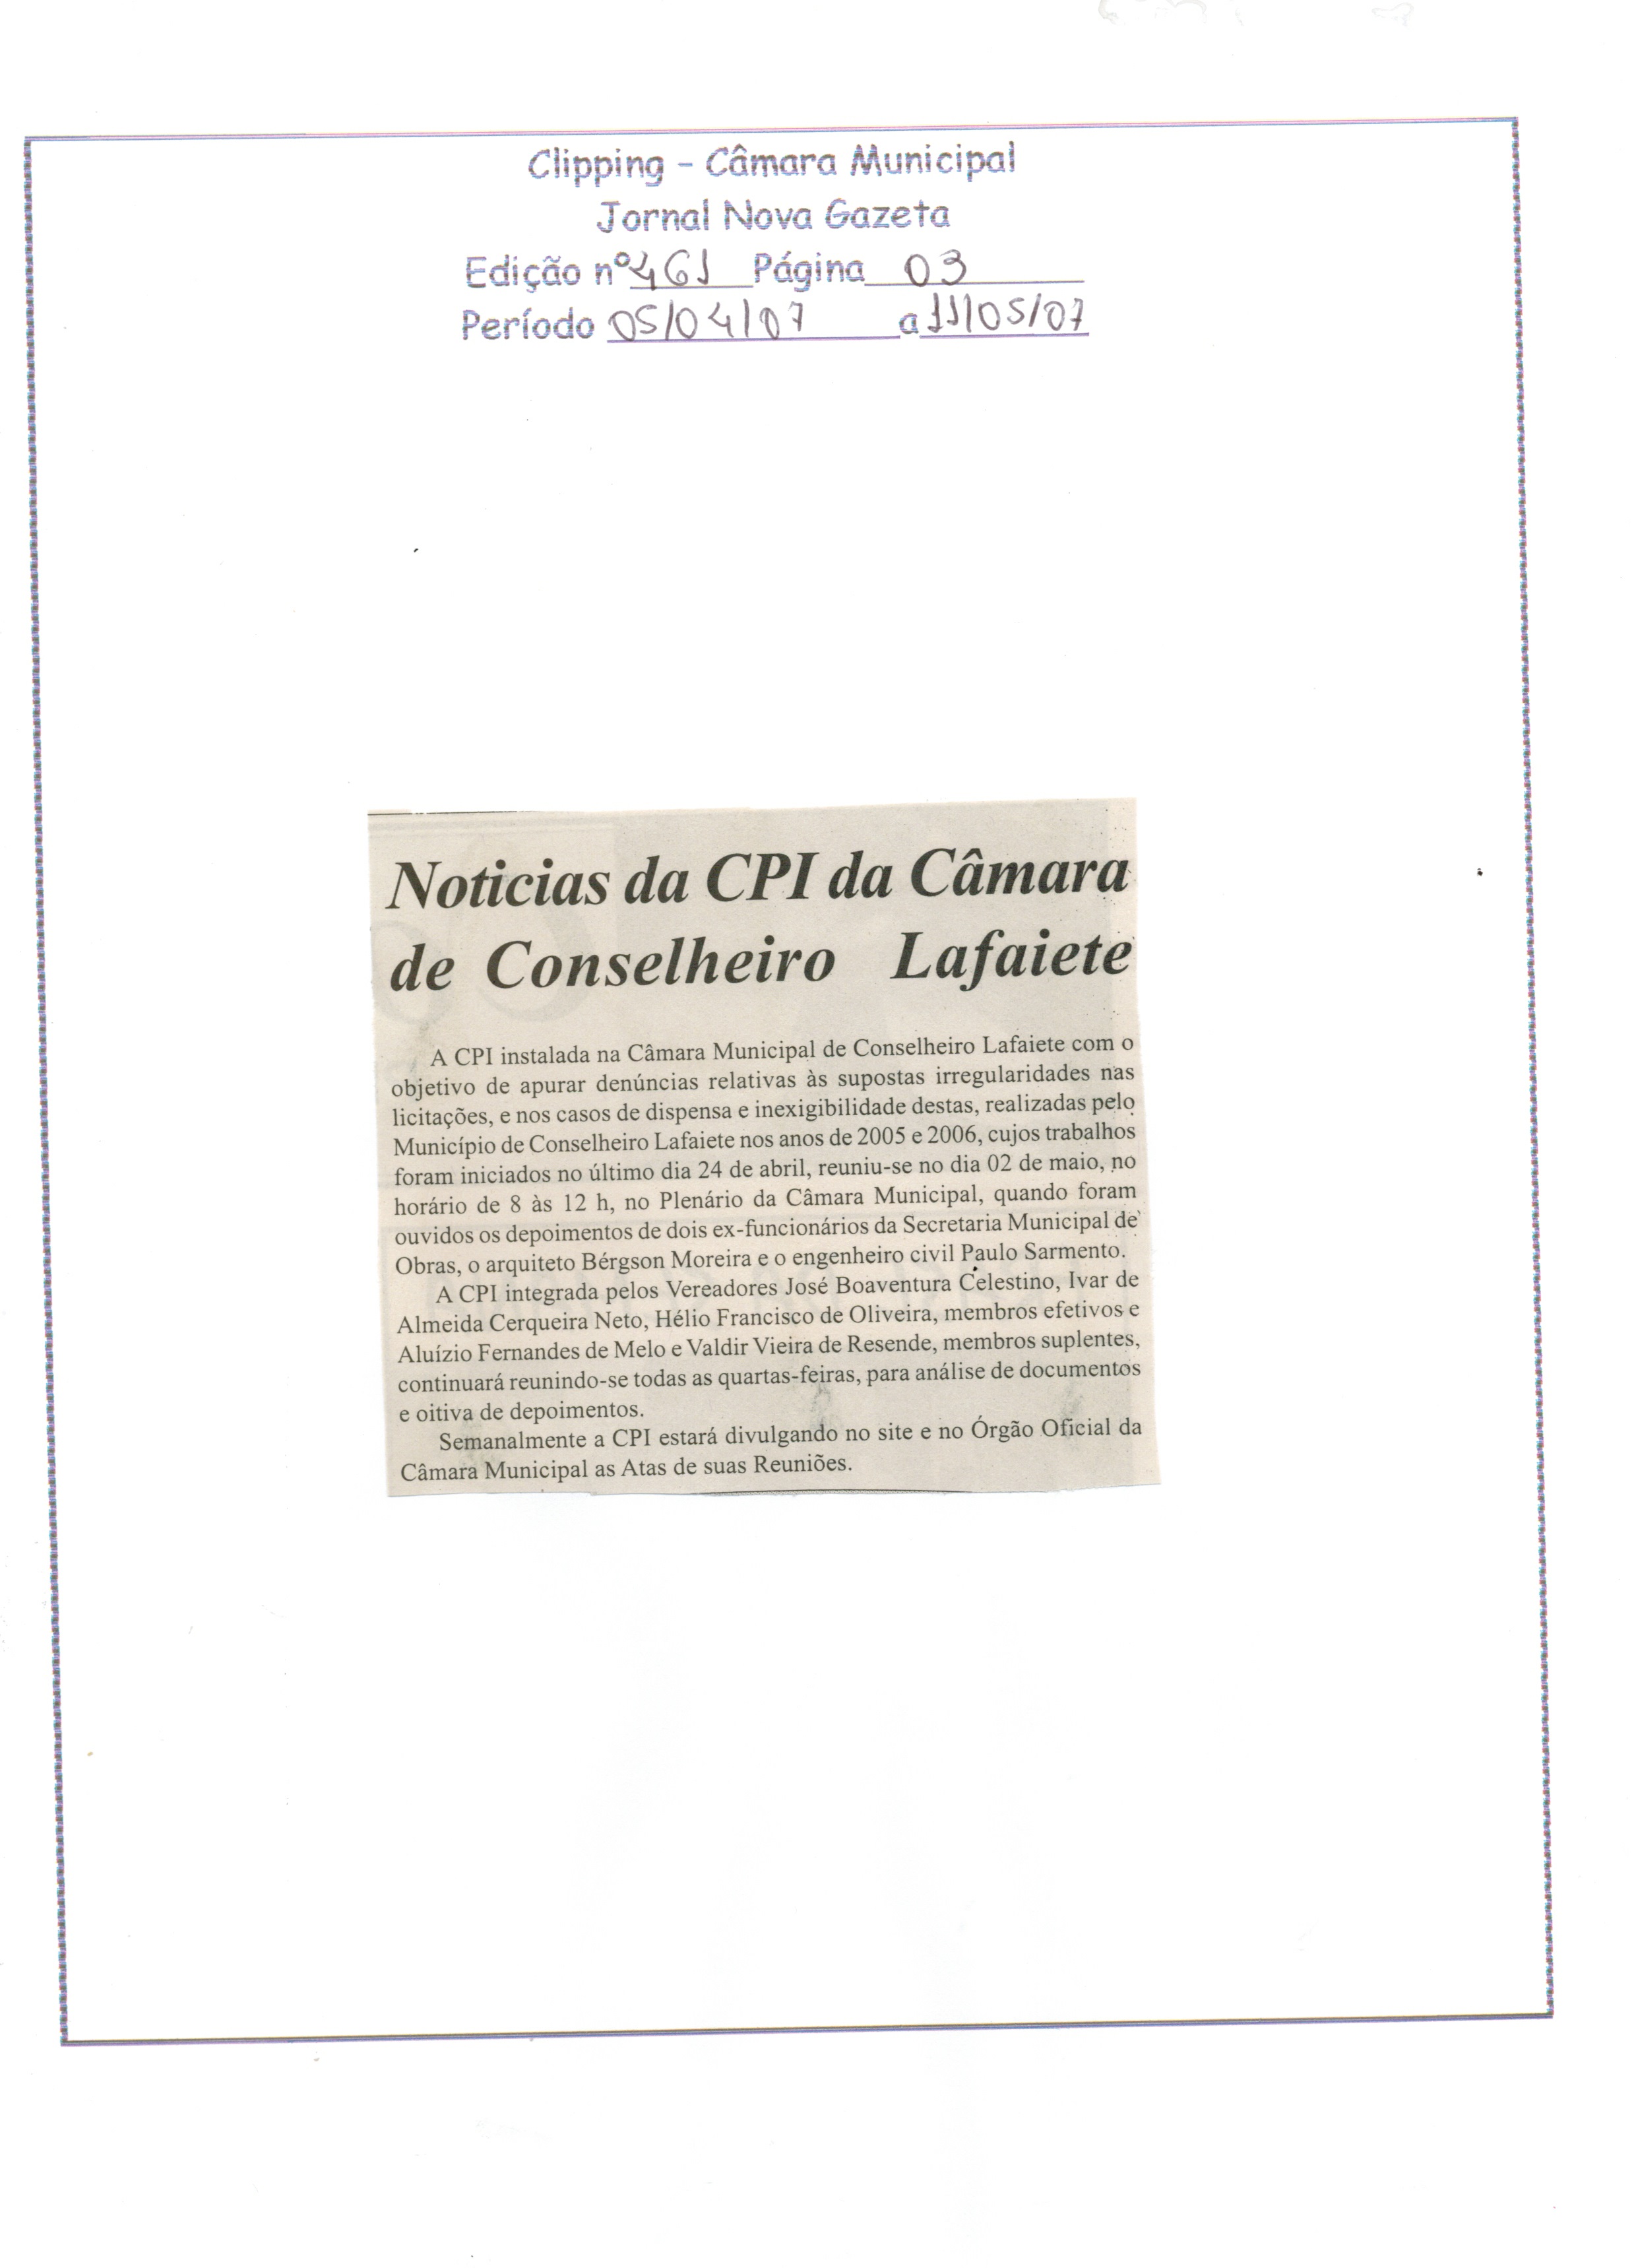 Notícias da CPI da Câmara de Conselheiro Lafaiete. Jornal Nova Gazeta, Conselheiro Lafaiete, 05 abr. 2007, 461ª ed., p. 03.